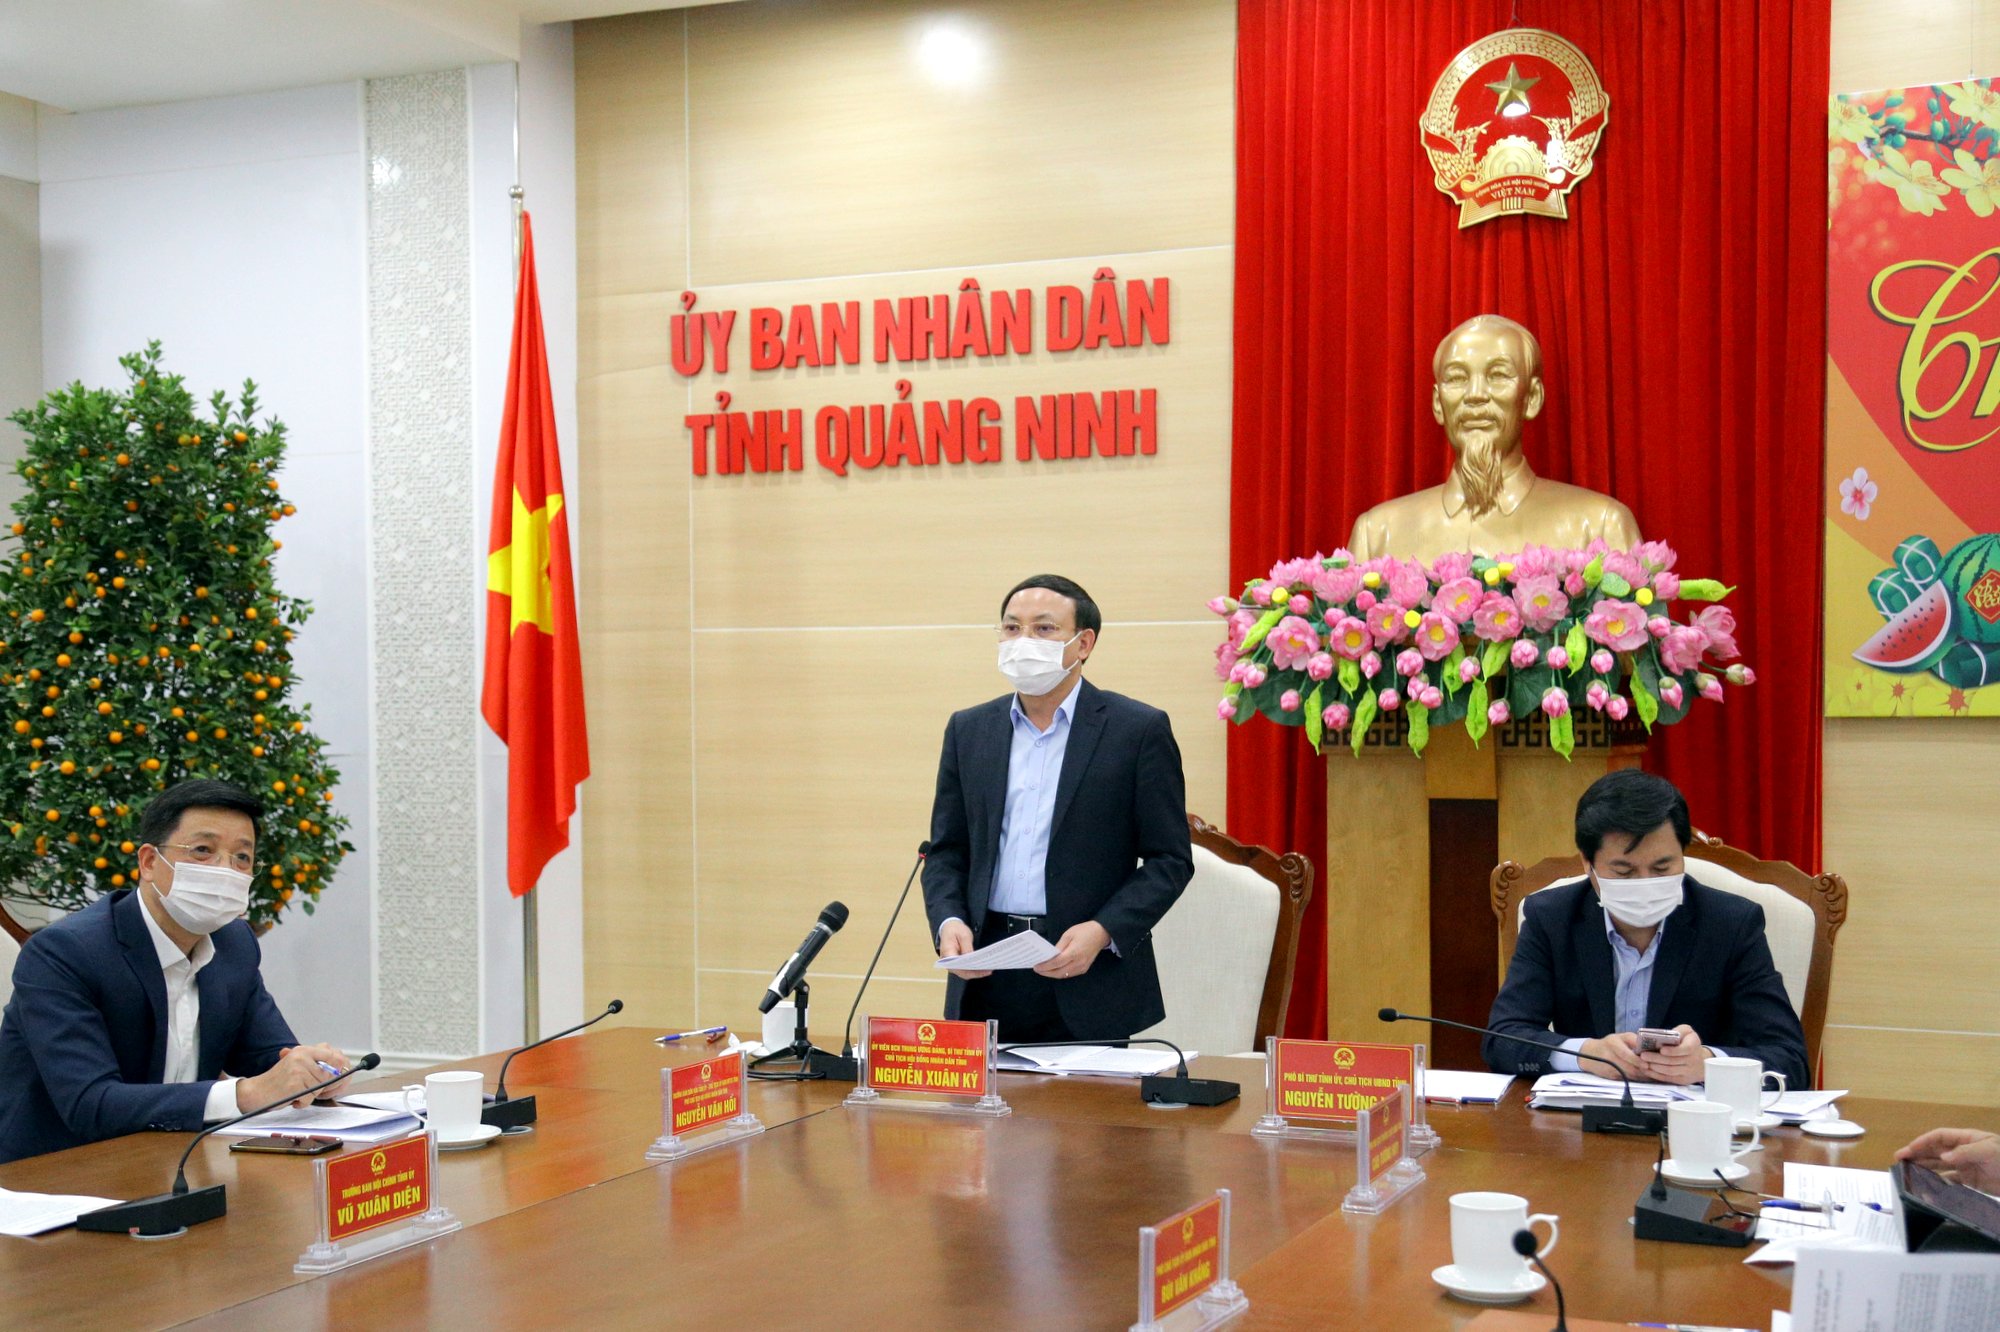 Đồng chí Nguyễn Xuân Ký, Bí thư Tỉnh ủy, Chủ tịch HĐND tỉnh trao Bằng khen của UBND tỉnh cho các cá nhân có đóng góp tích cực vào công tác thu ngân sách nhà nước.